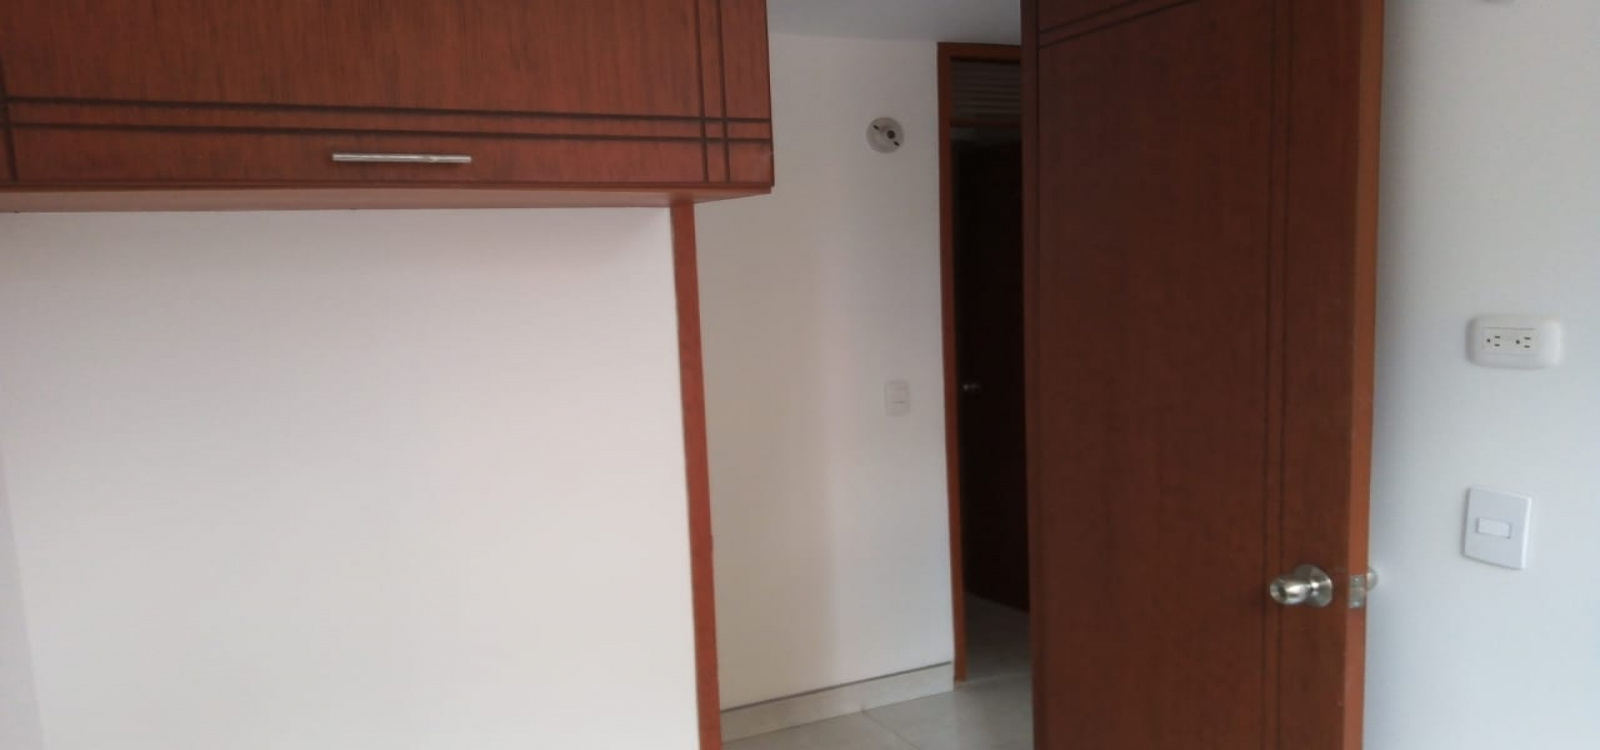 CLL 2 # 39 D 30, Bogotá, Occidente, Tierra Buena, 3 Habitaciones Habitaciones,2 BathroomsBathrooms,Apartamentos,Arriendo,3776